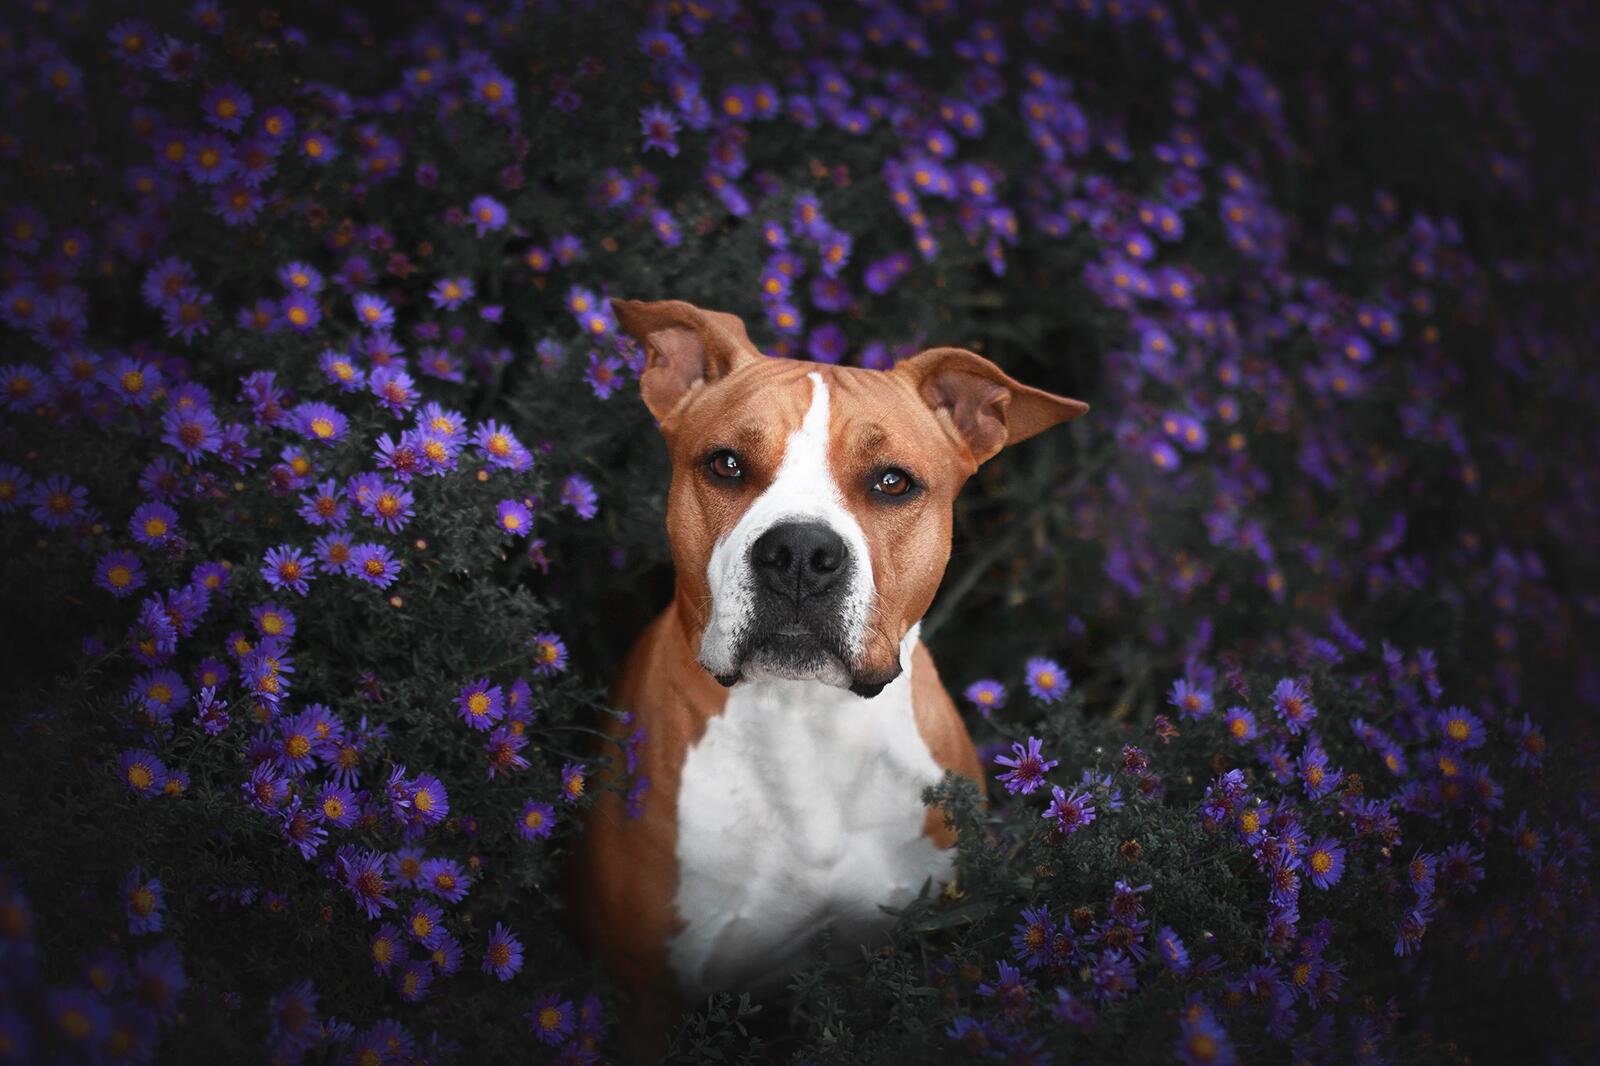 免费照片红狗在紫丁香花丛中